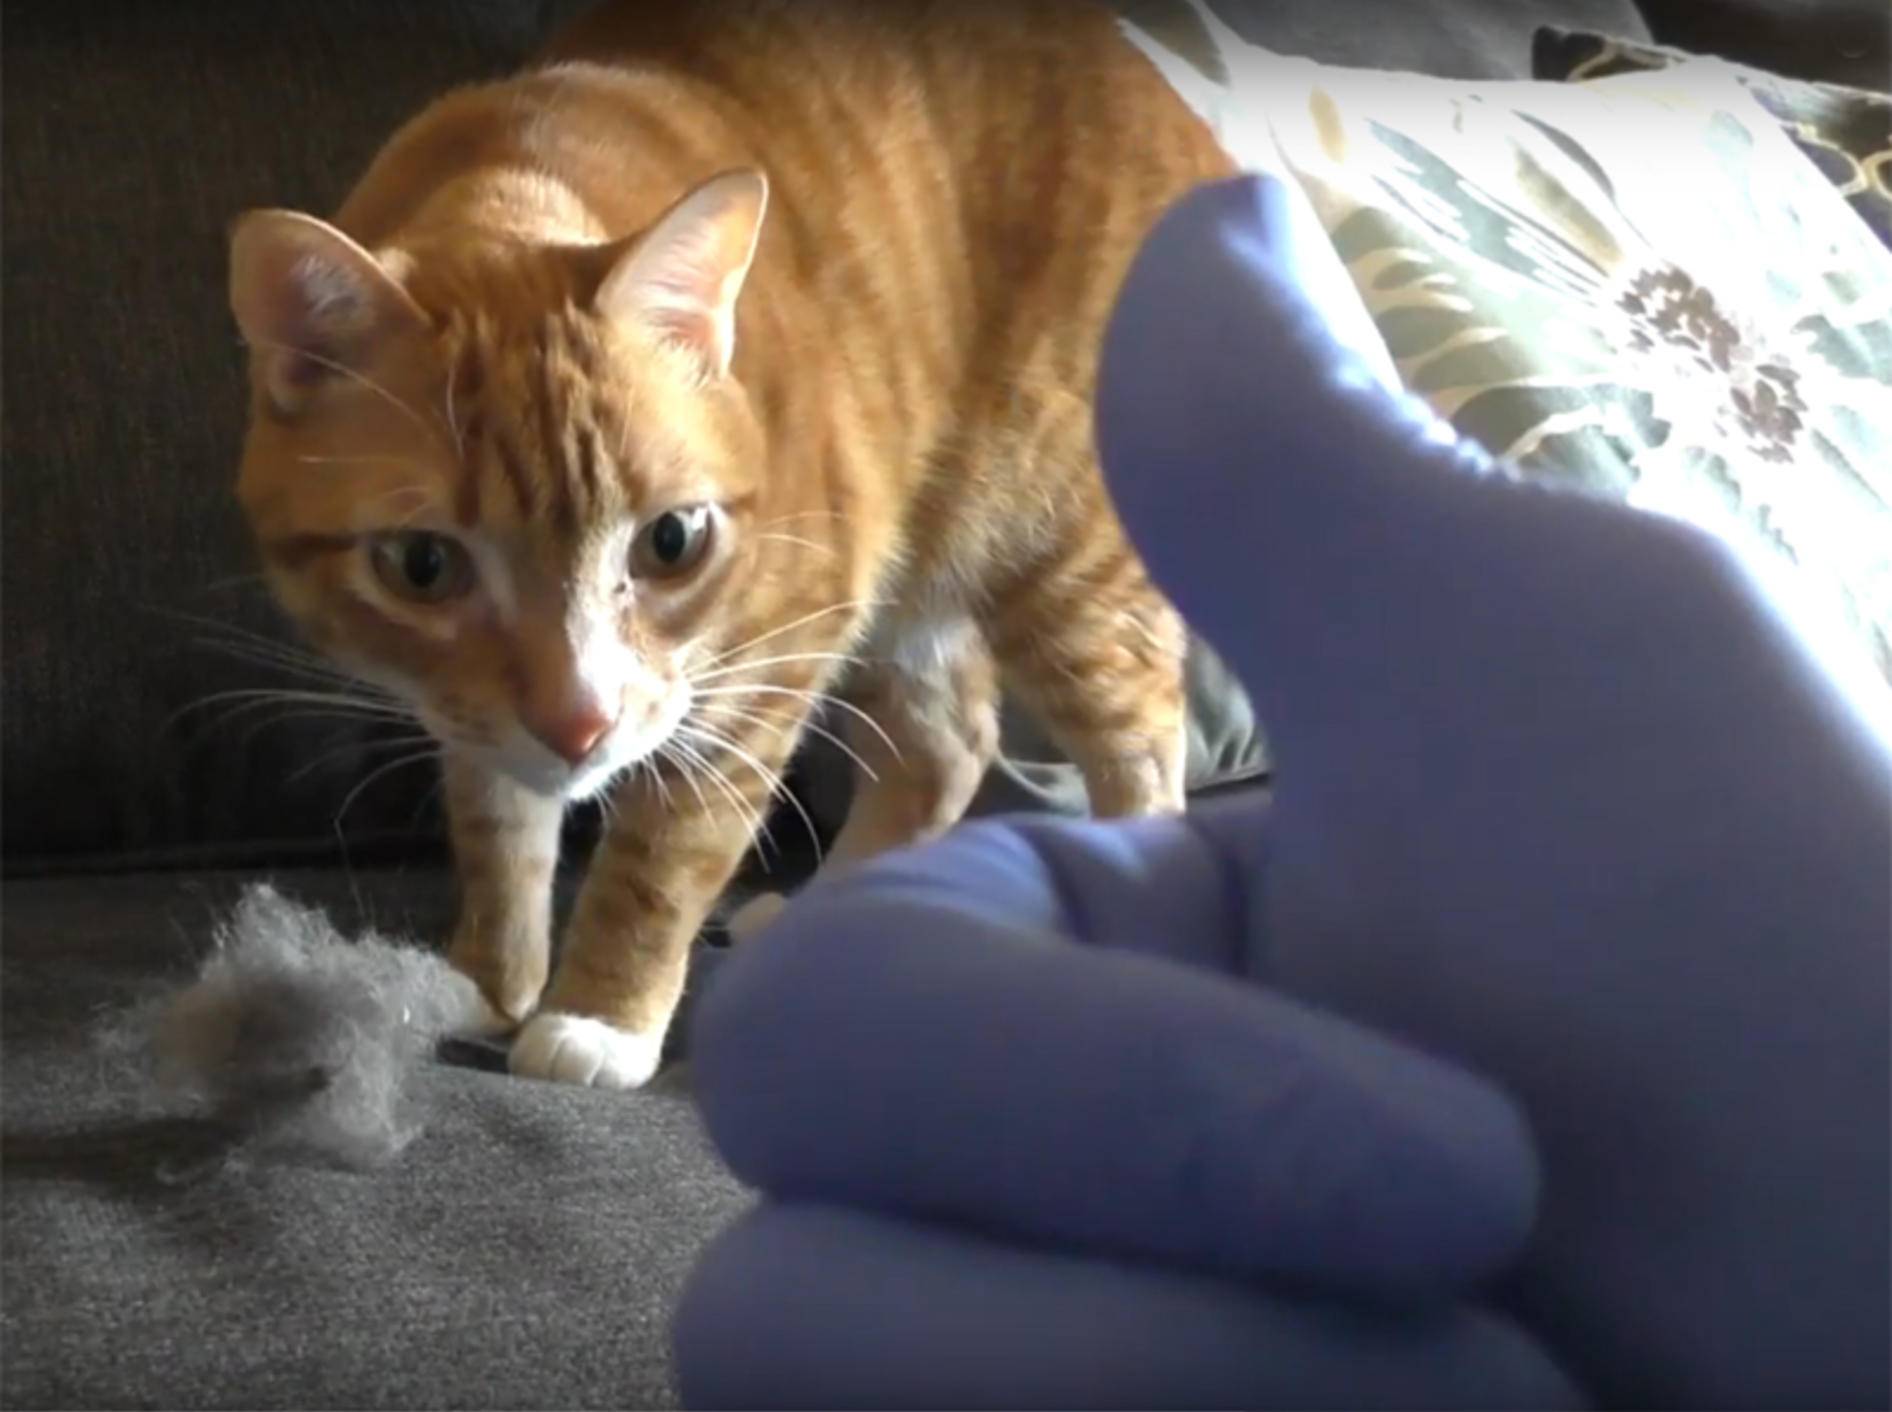 Cole und Marmalade geben praktische Tipps für Katzenhalter – YouTube / Cole and Marmalade